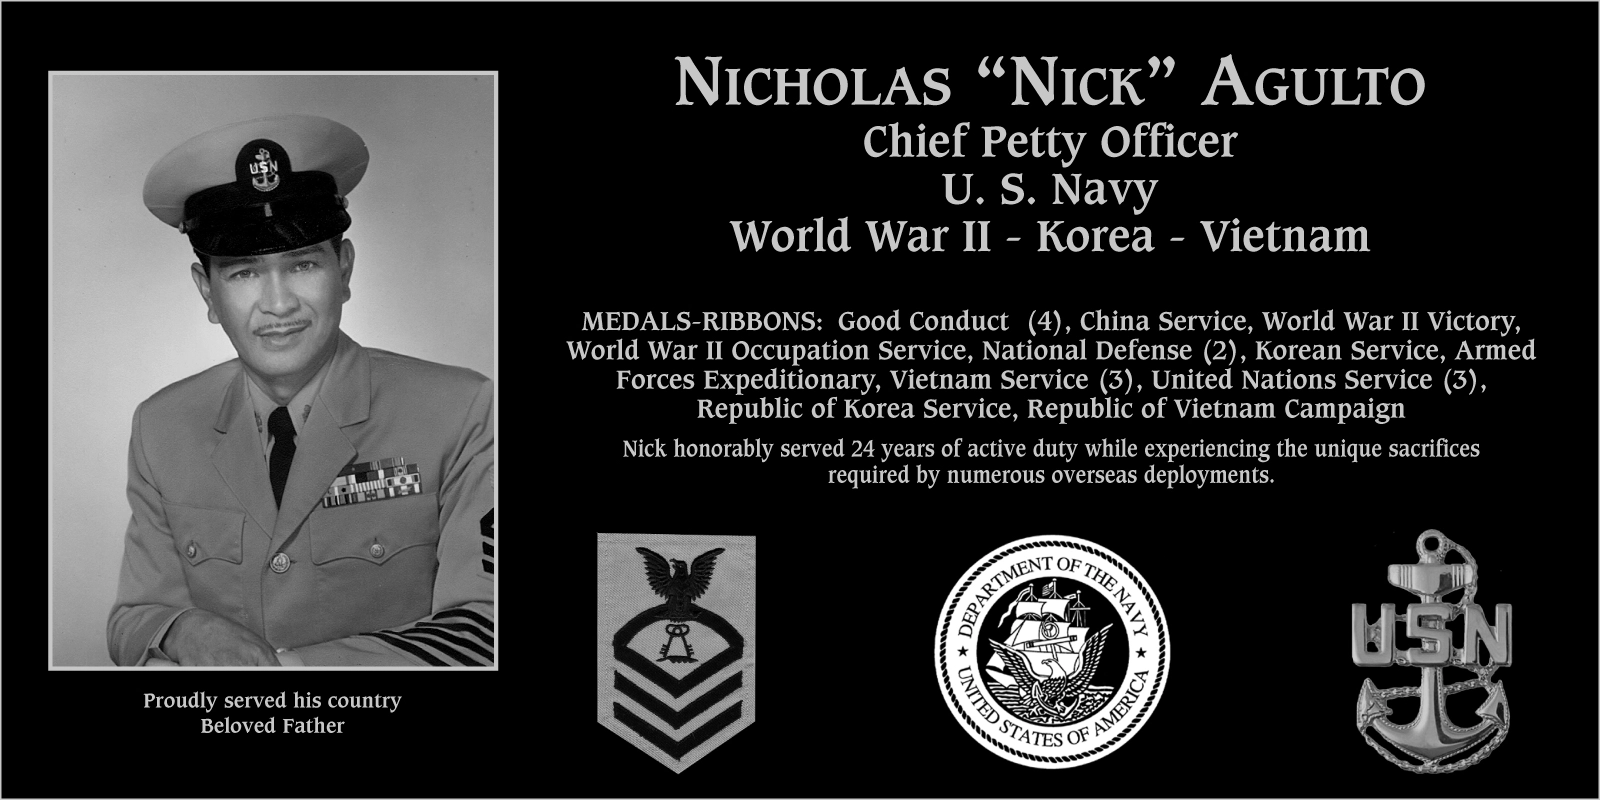 Nicholas “Nick” Agulto